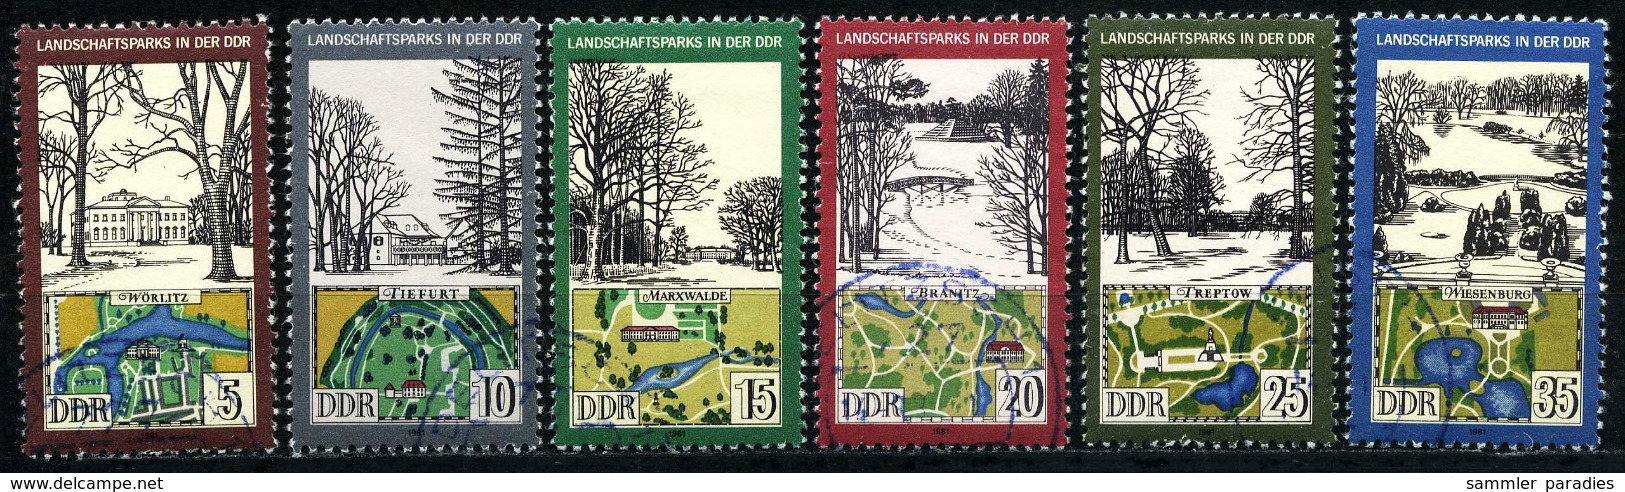 DDR - Michel 2611 / 2616 - OO Gestempelt (B) - Landschaftsparks - Used Stamps